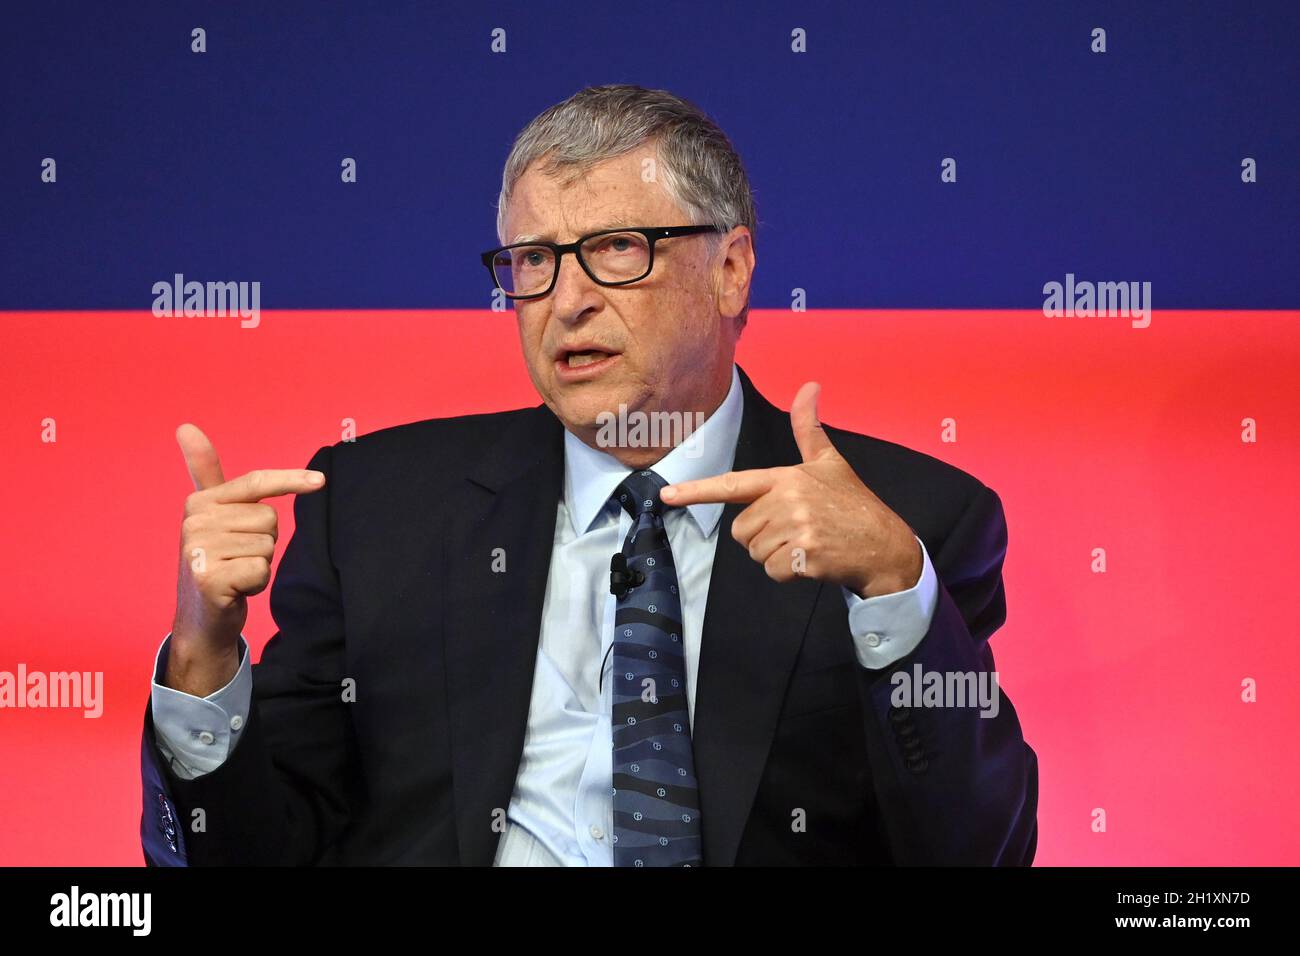 Bill Gates spricht während des Global Investment Summit im Science Museum, London. Bilddatum: Dienstag, 19. Oktober 2021. Stockfoto